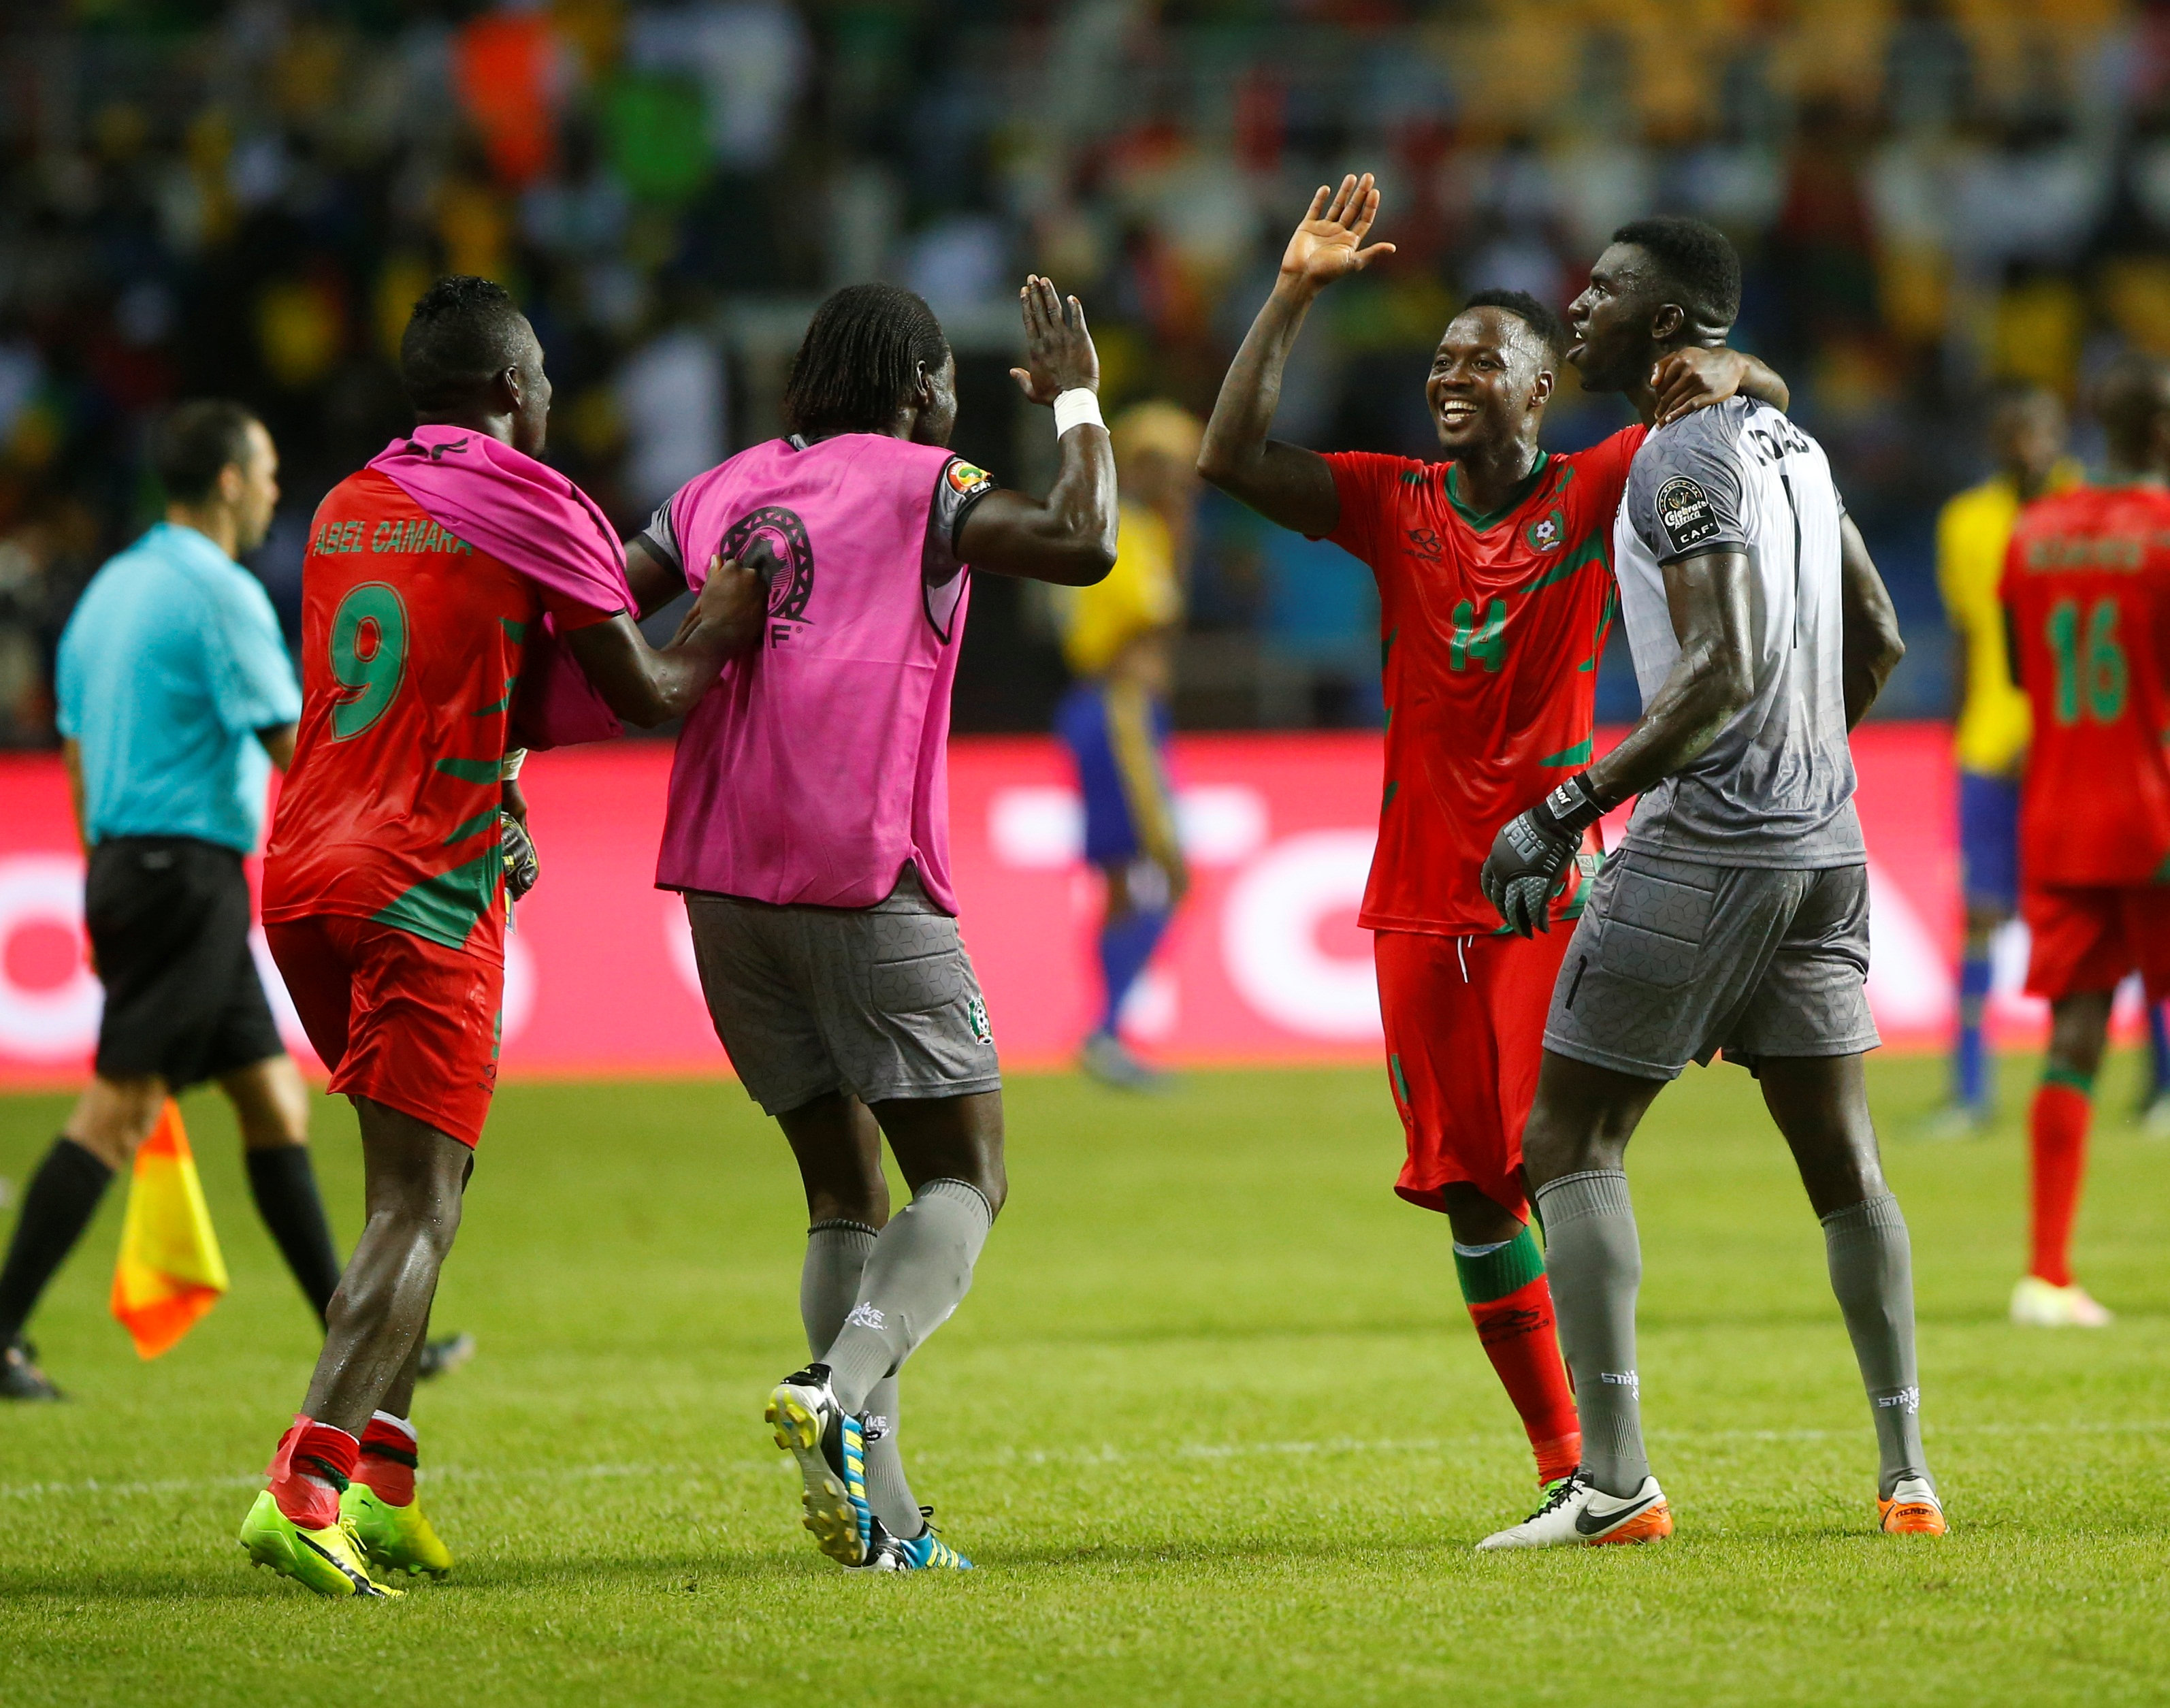 Người hùng Soares (số 14) của Guinea-Bissau được đồng đội chúc mừng sau trận. Ảnh: REUTERS